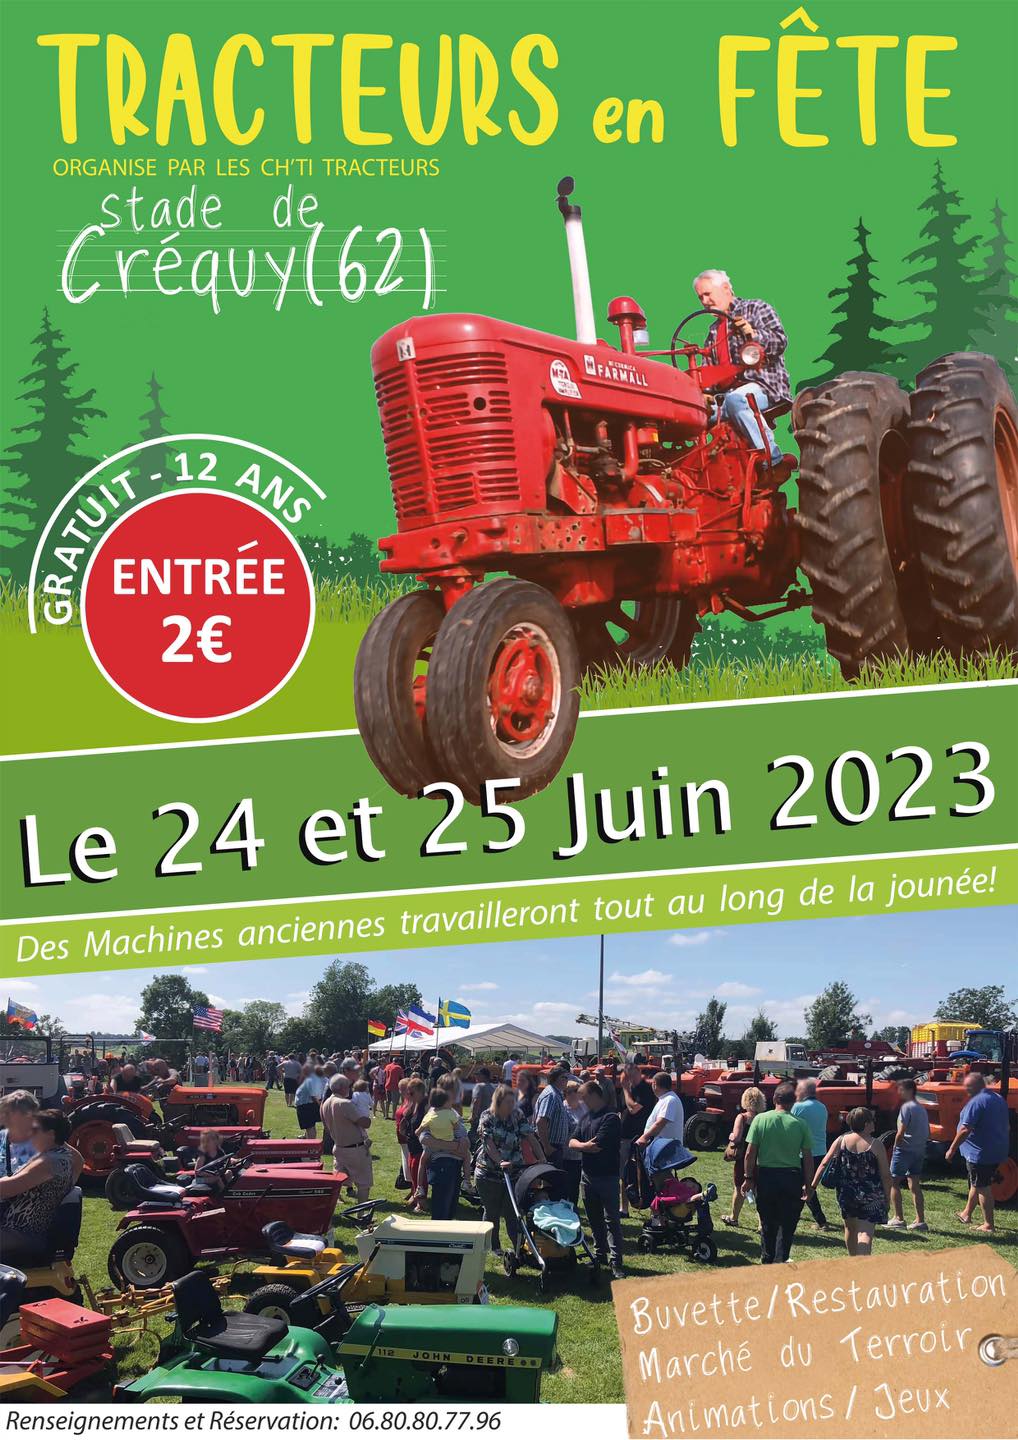 2023-06-24 & 25 à Crécy (62) Tracteurs en fête Tracte14